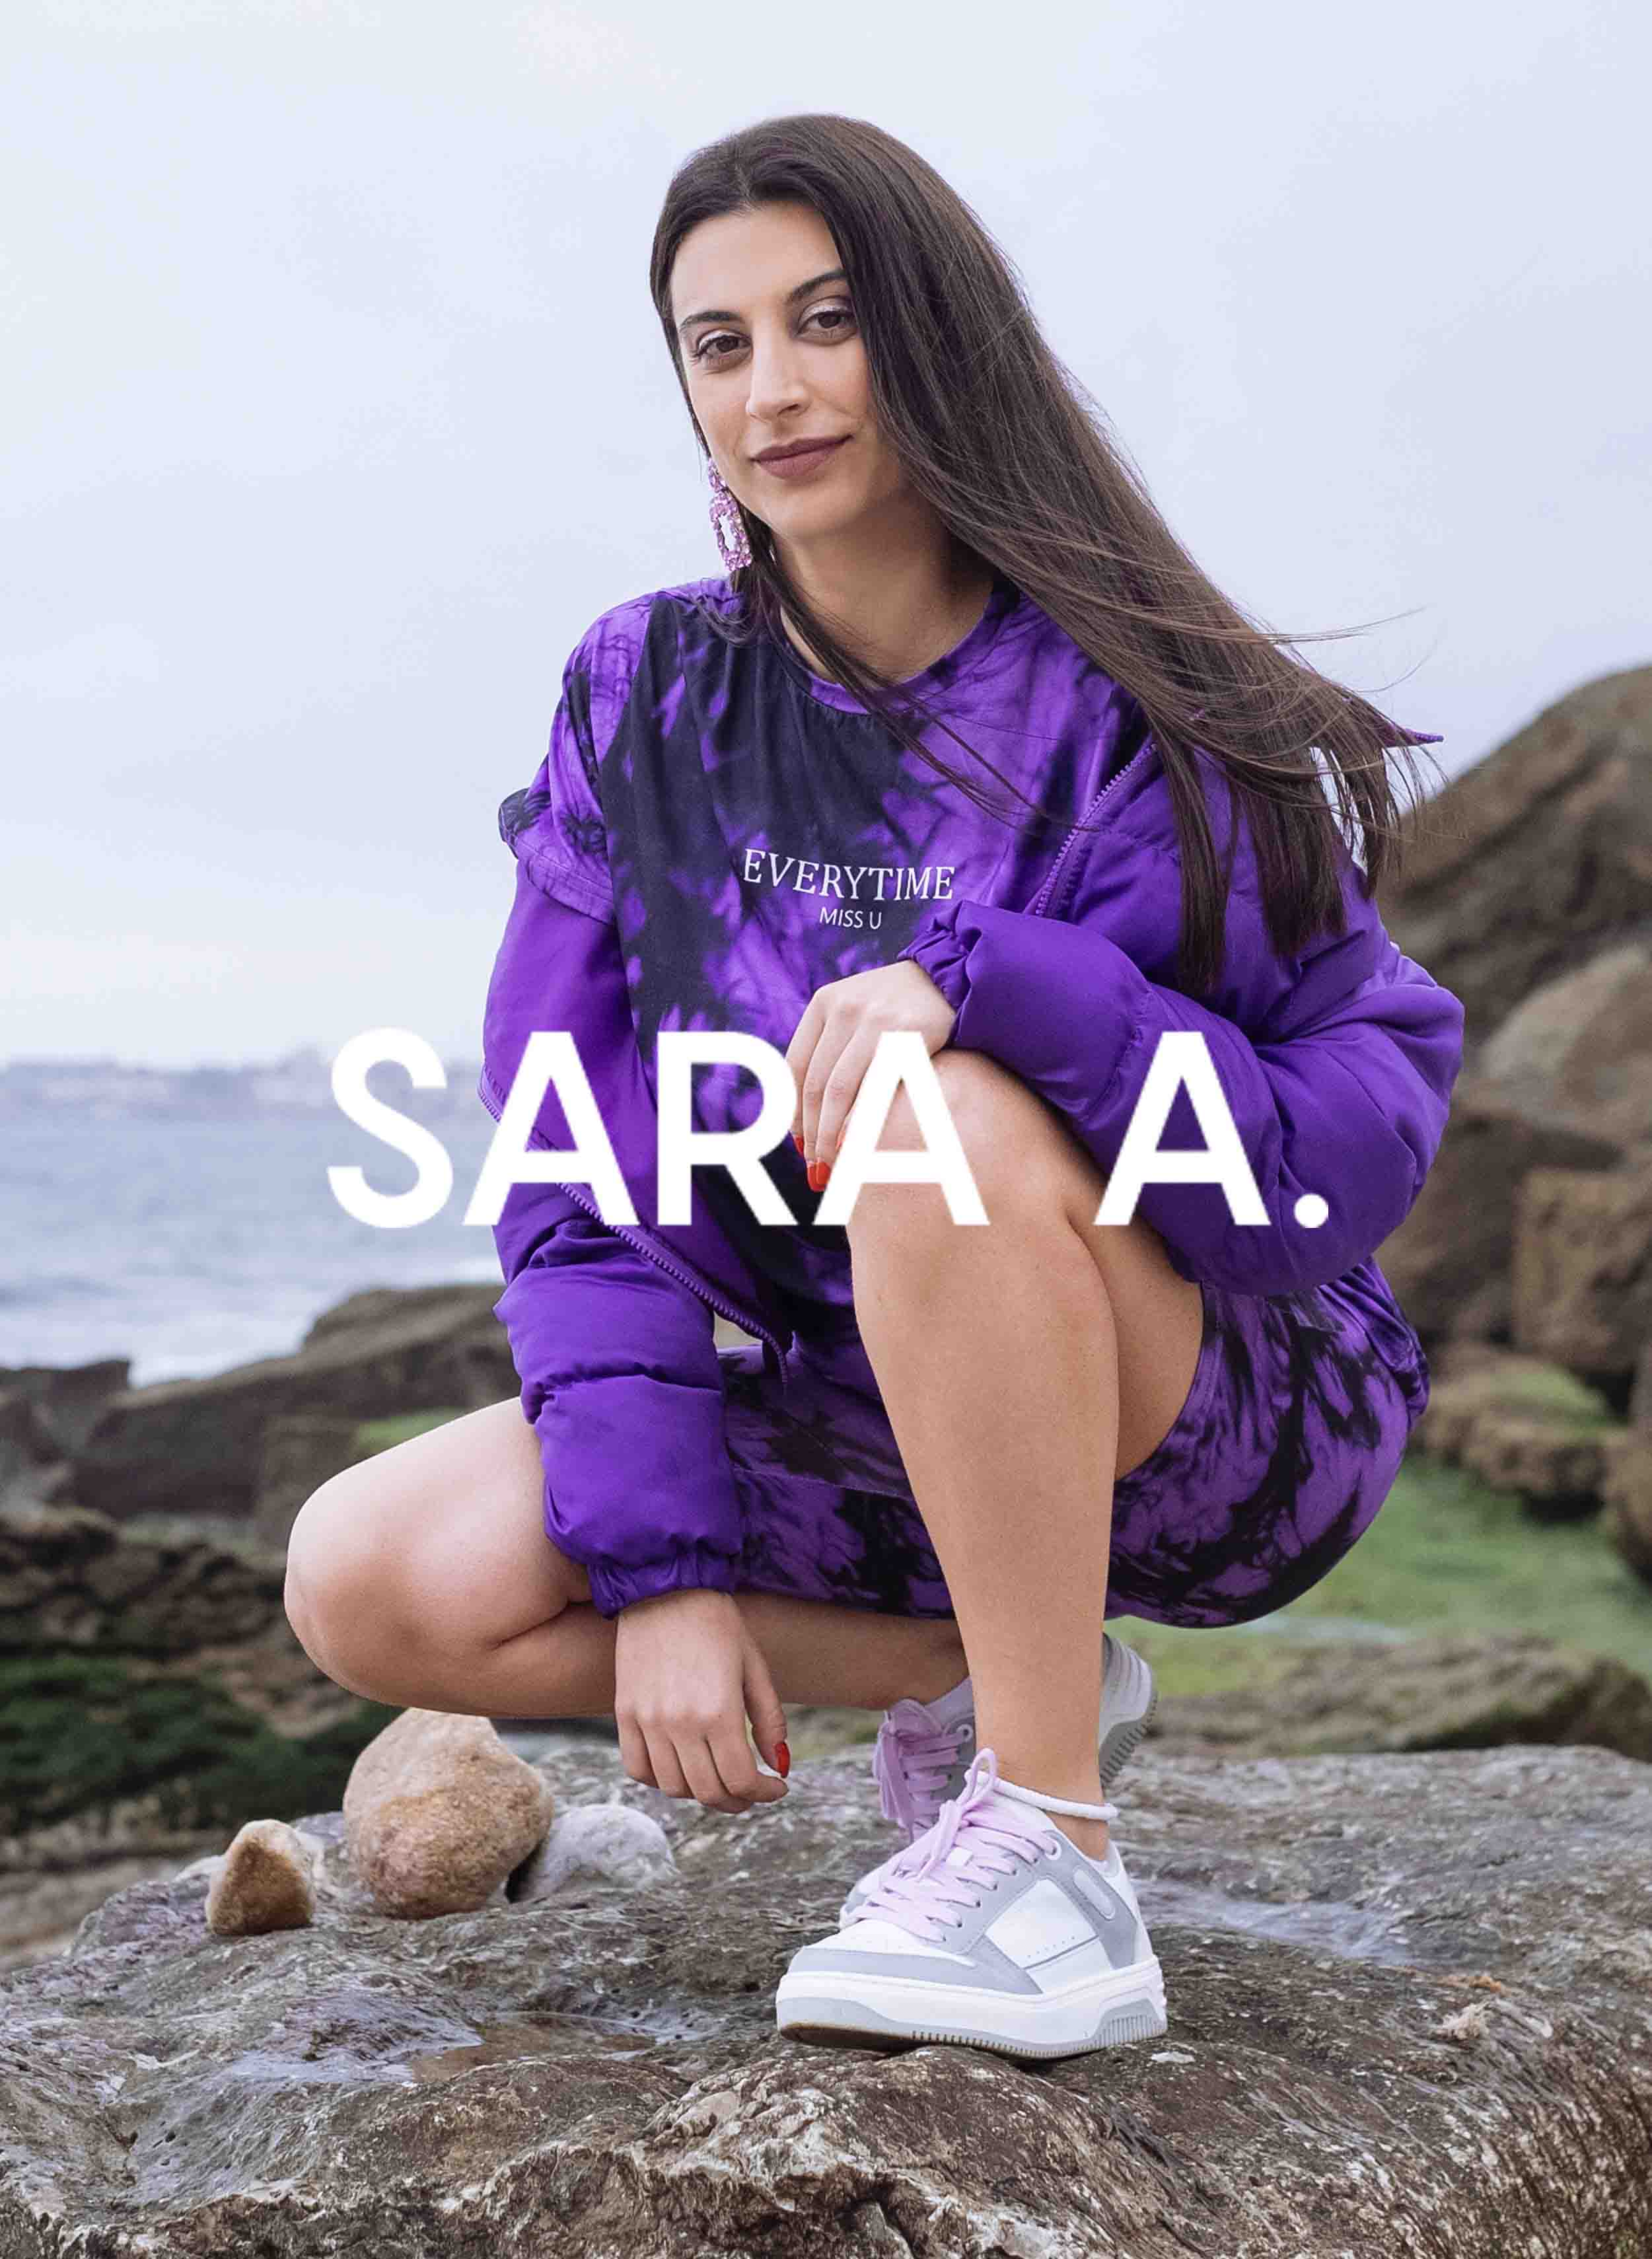 Sara portant une chemise violette, jumelée à Diverge sneakers, montrant ses chaussures personnalisées et promouvant l’impact social à travers le projet Imagine.